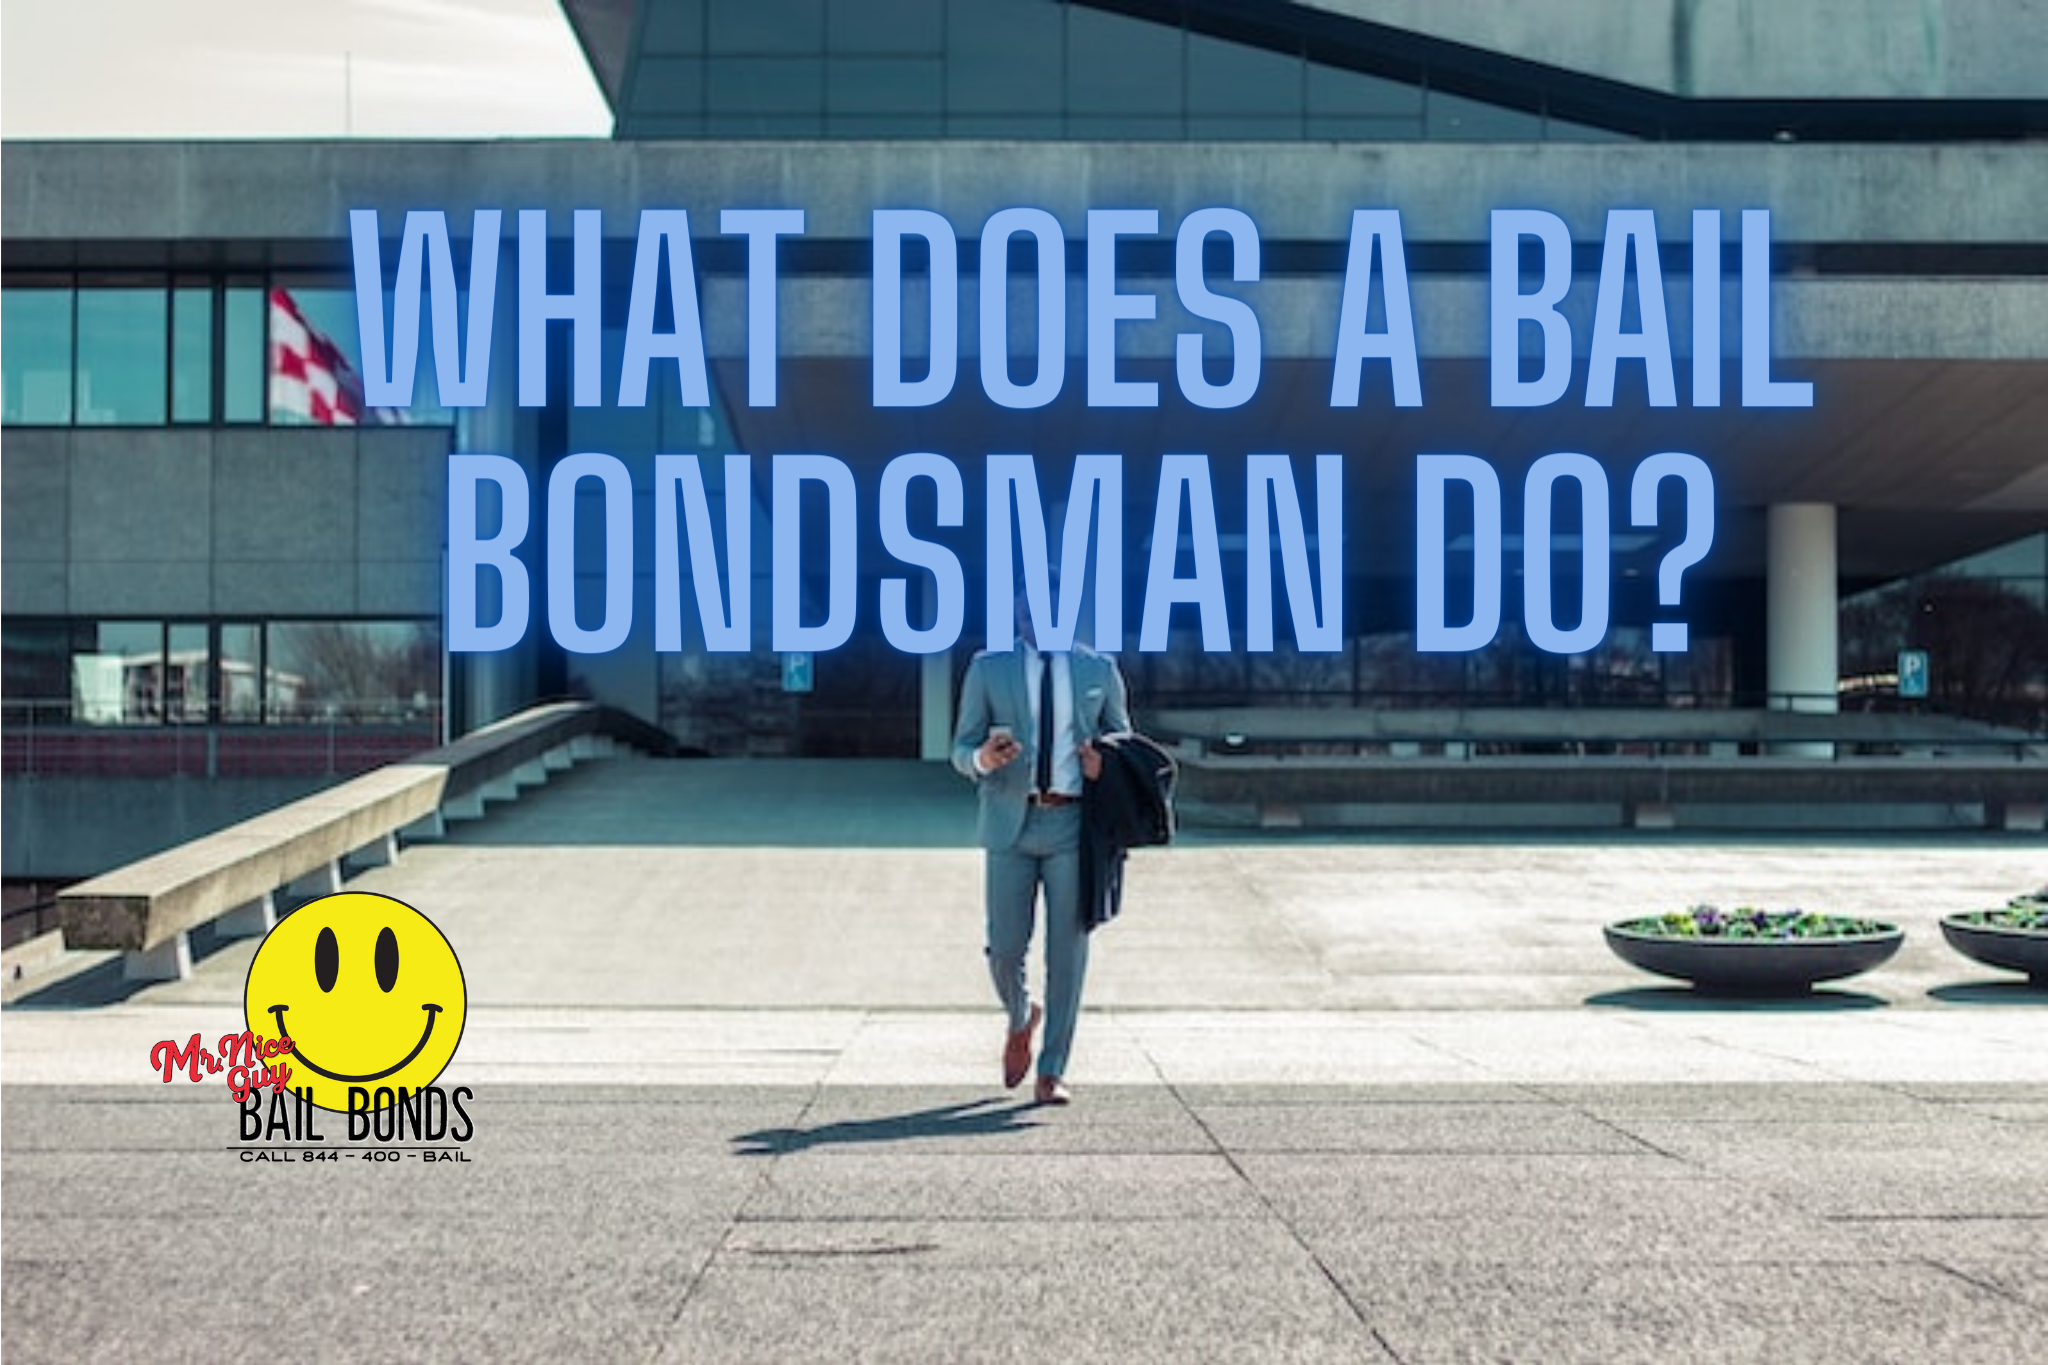 What Does a Bail Bondsman Do?